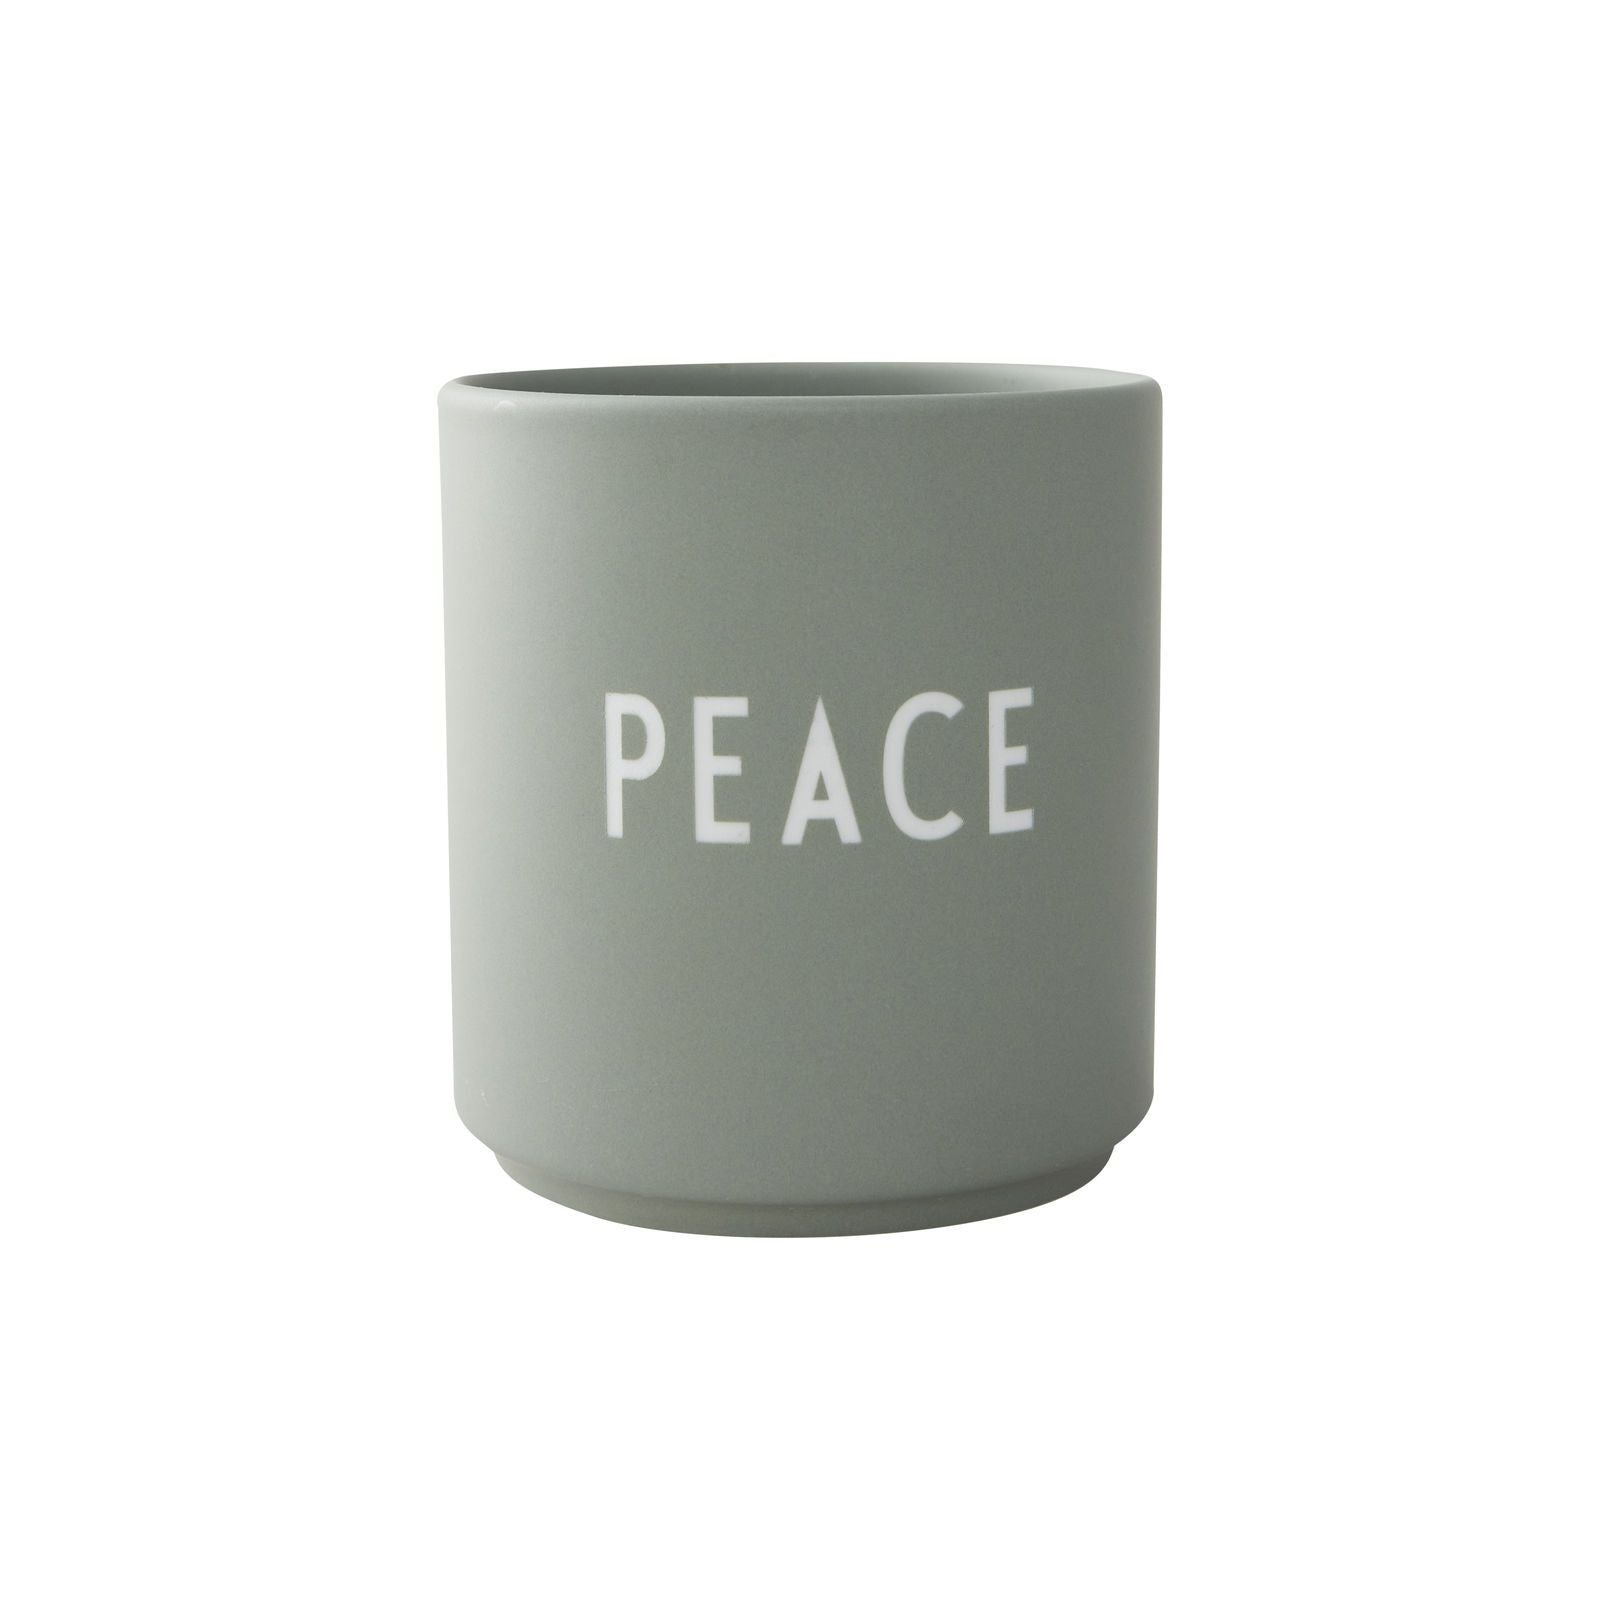 La pace della tazza preferita della lettera di design, verde